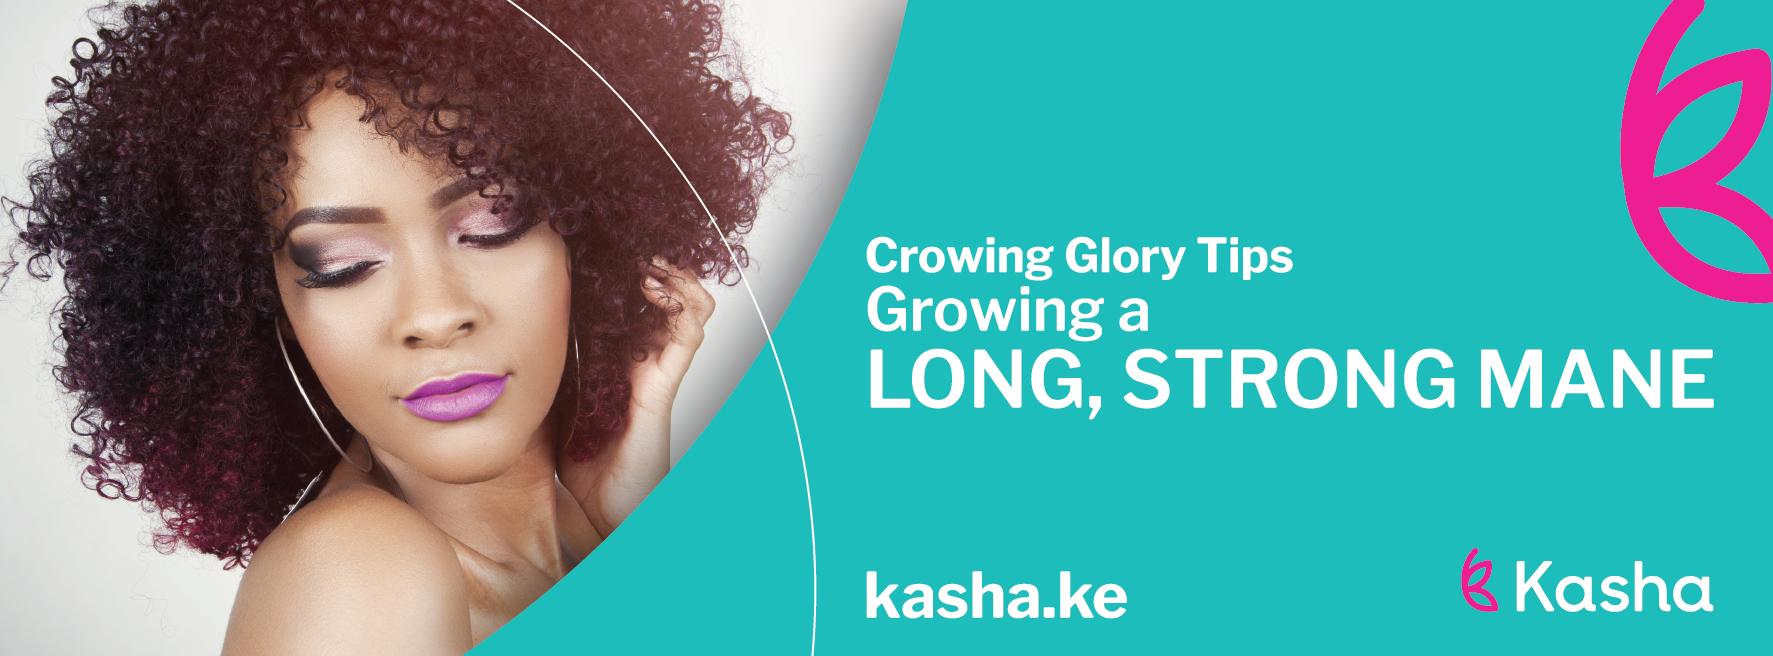 Crowning Glory Tips: Growing a Long, Strong Mane | Kasha KenyaKasha Kenya